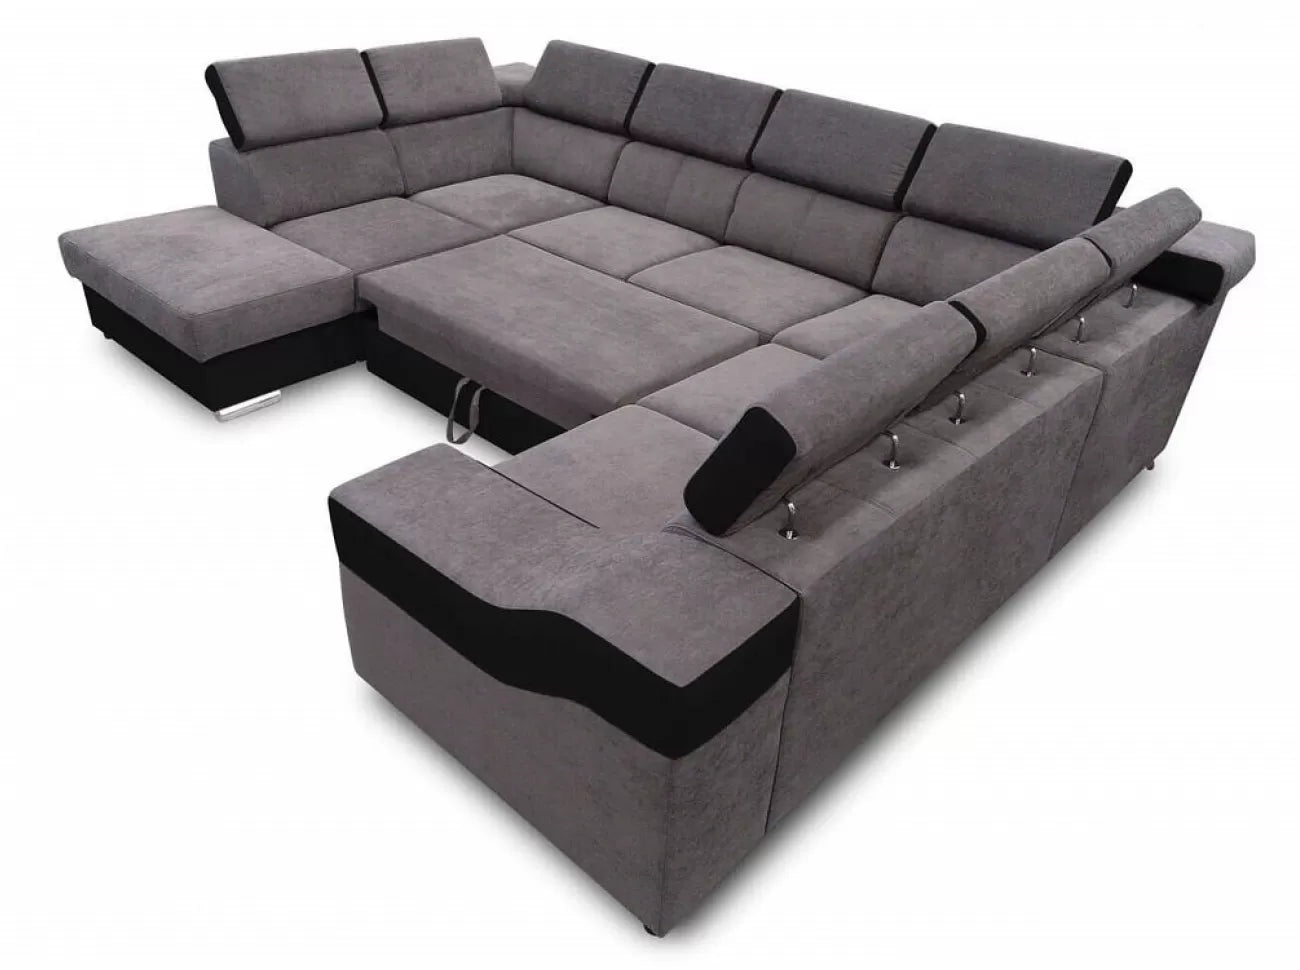 Sofá 7 plazas en forma de U con cama extraíble y reposacabezas reclinables - Angela